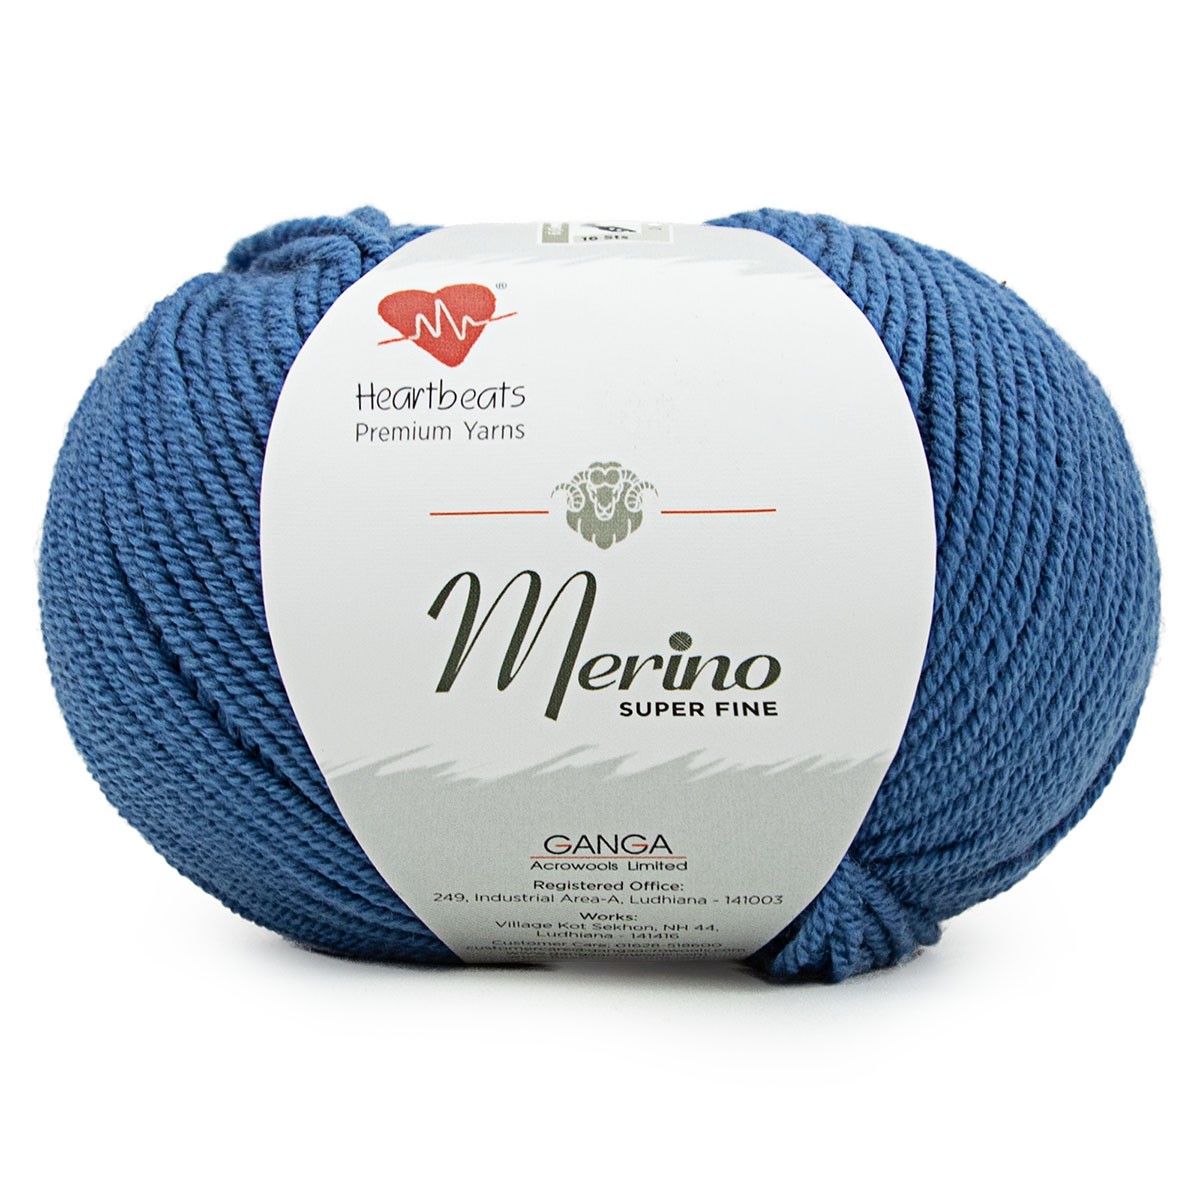 Buy Merino Super Fine Online in India - Pure Wool & Yarn by Heartbeats Yarns